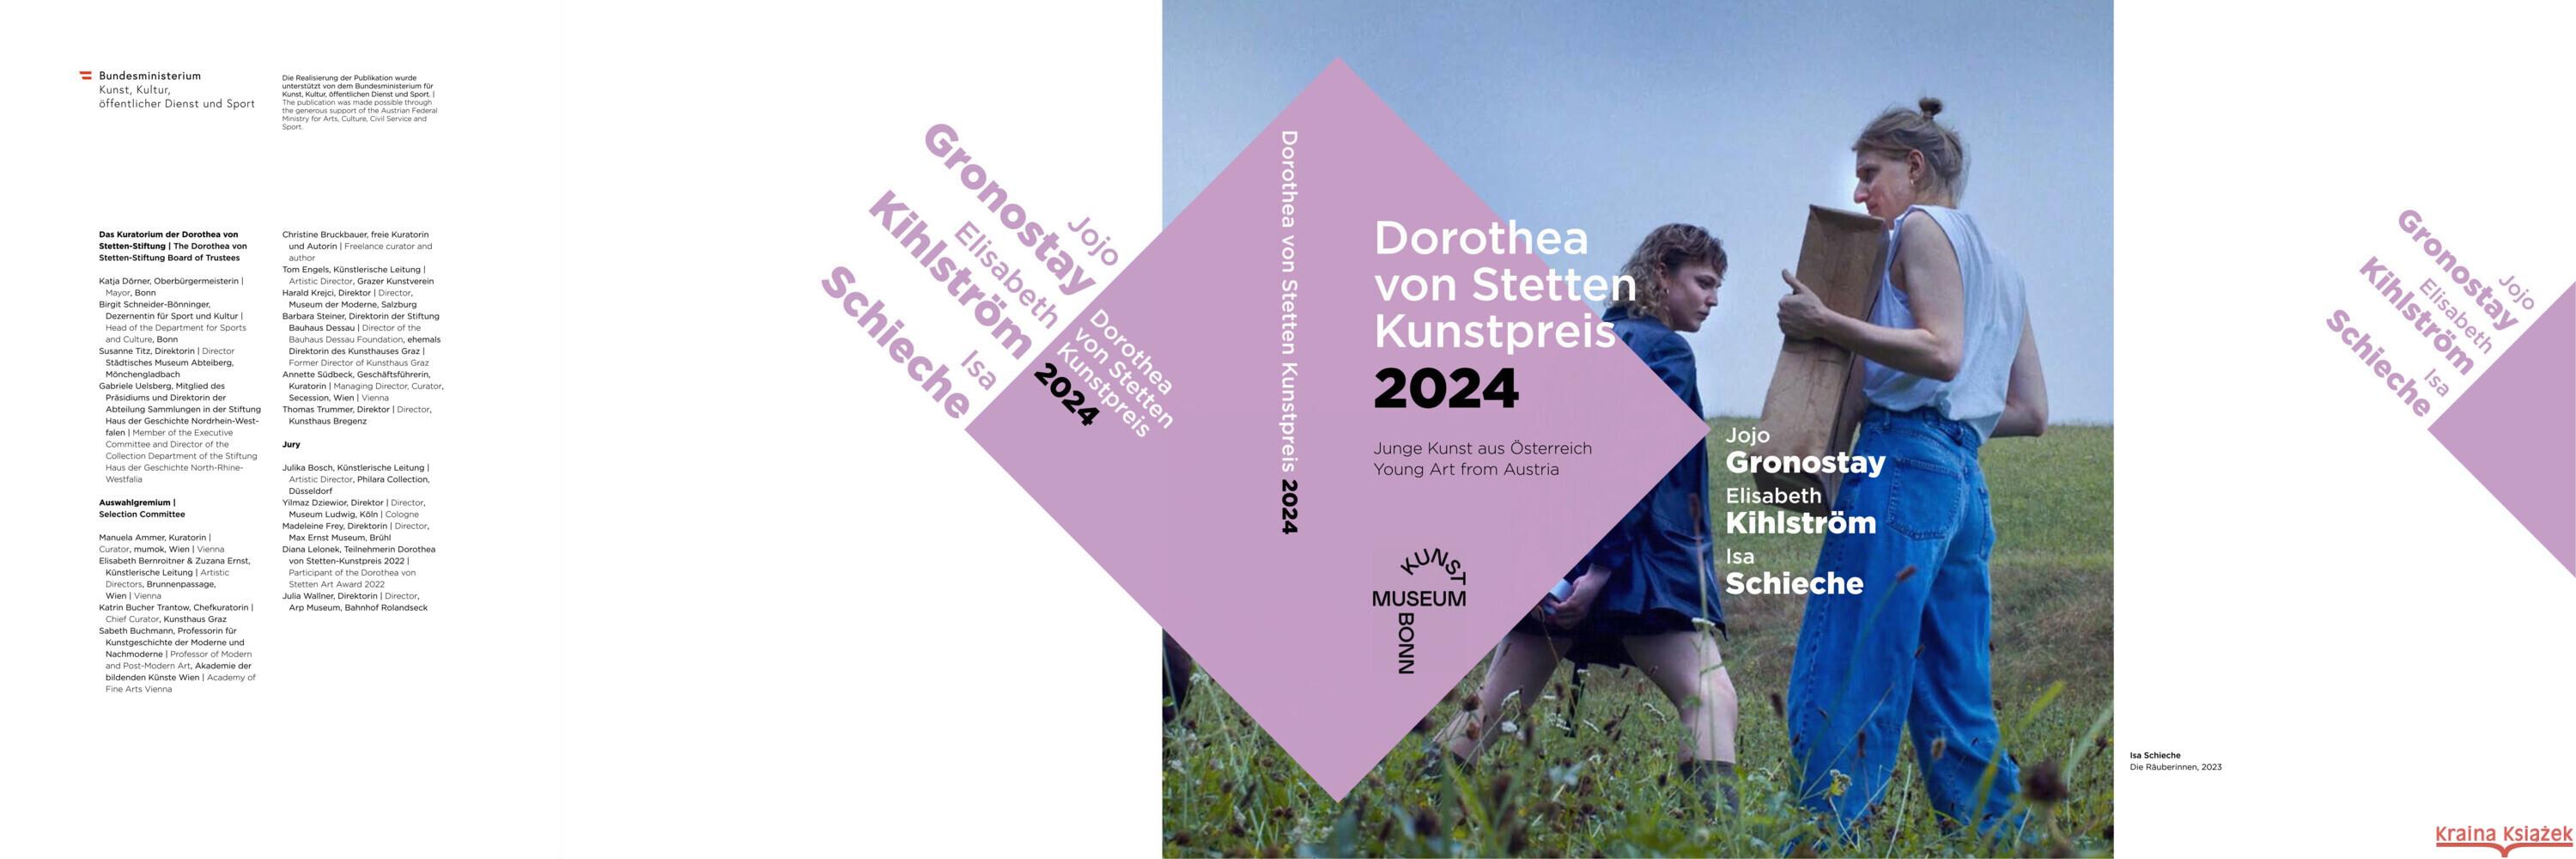 Dorothea von Stetten Kunstpreis 2024 Buchmann, Sabeth, Klosterkötter, Lica Alica, Ratzinger, Gudrun 9783991530886 Verlag für moderne Kunst - książka